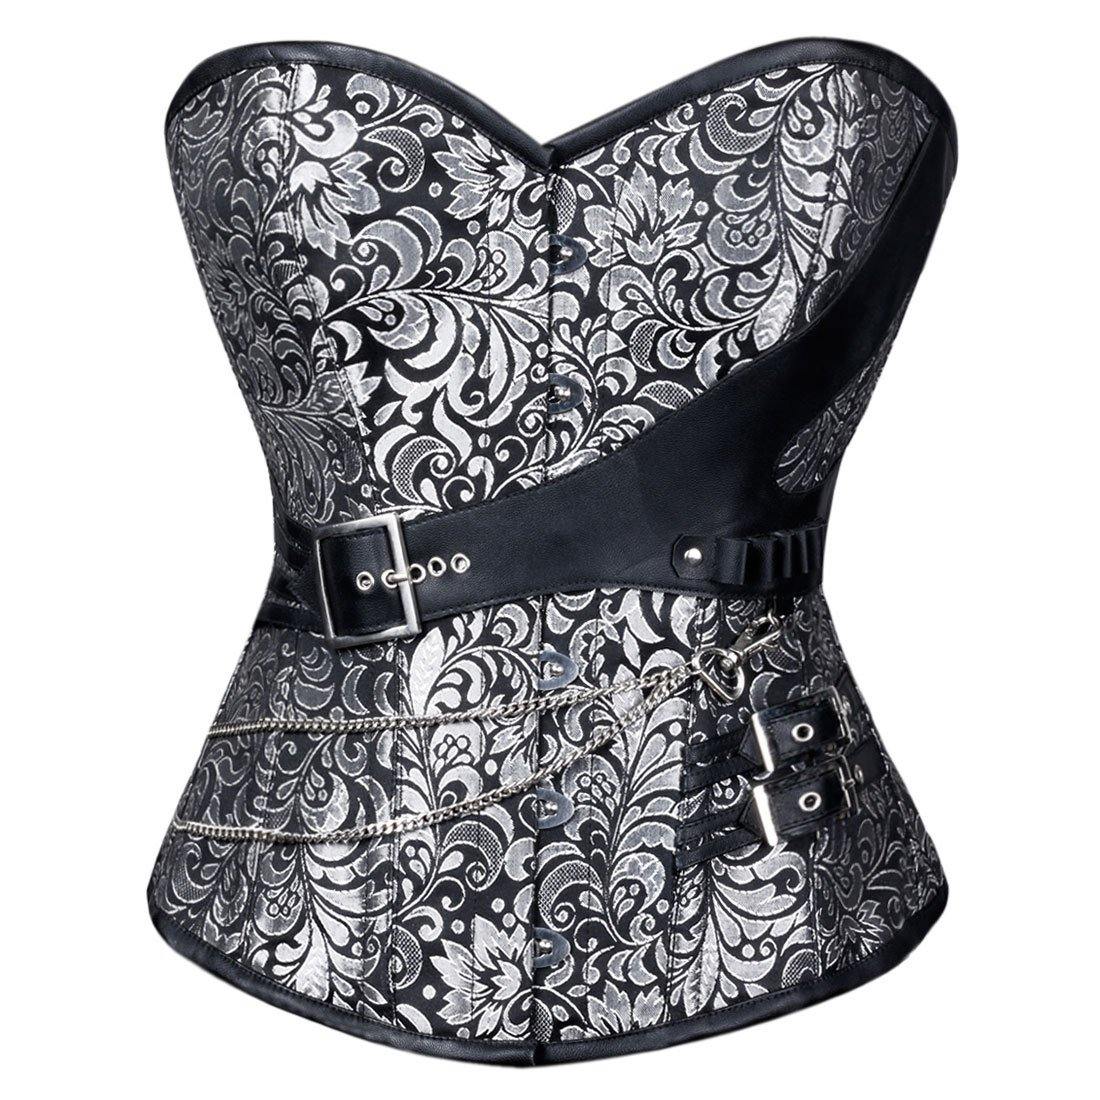 Adamaris Gothic overbust corset - Corset Revolution